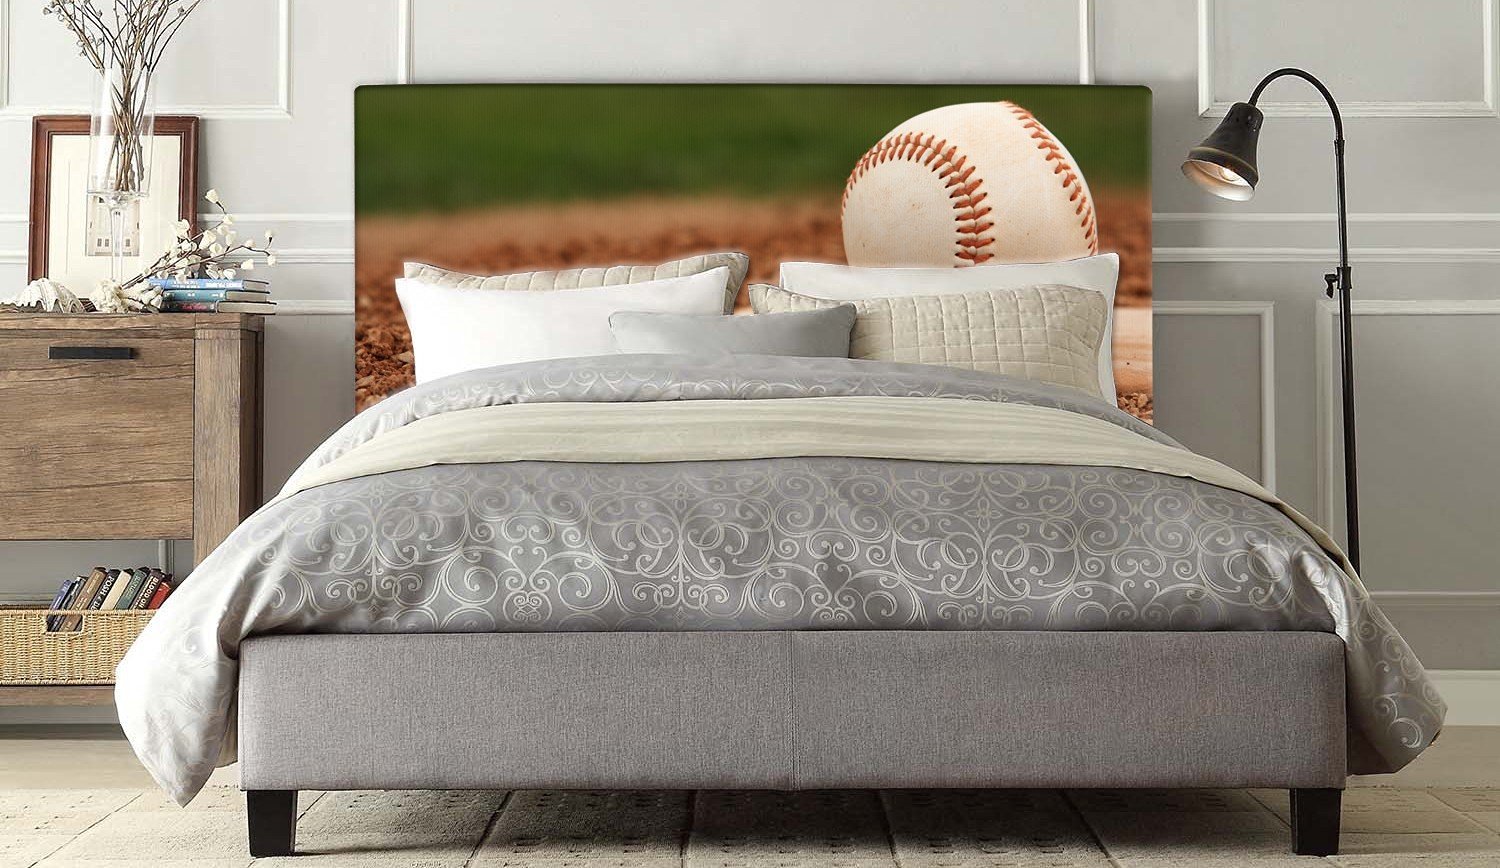 Get Baseball Bedroom Ideas Pics - Wohnzimmer Ideen